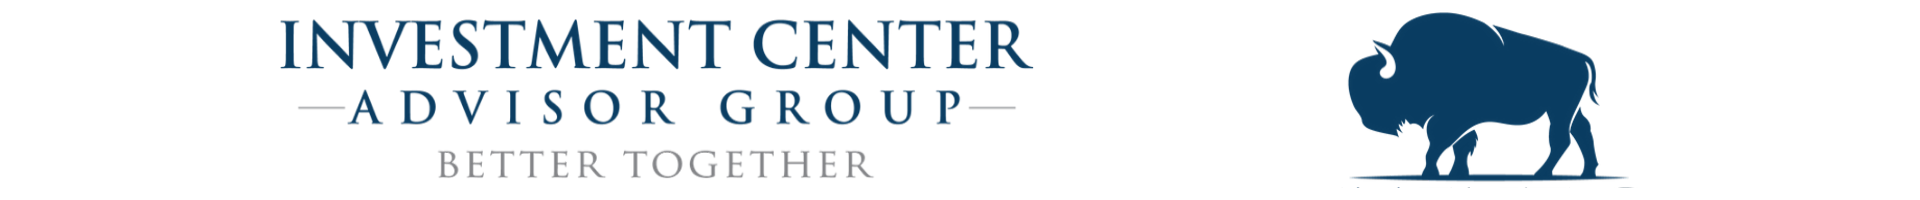 Investment Center Advisor Group - Sandra K. King, CRC®